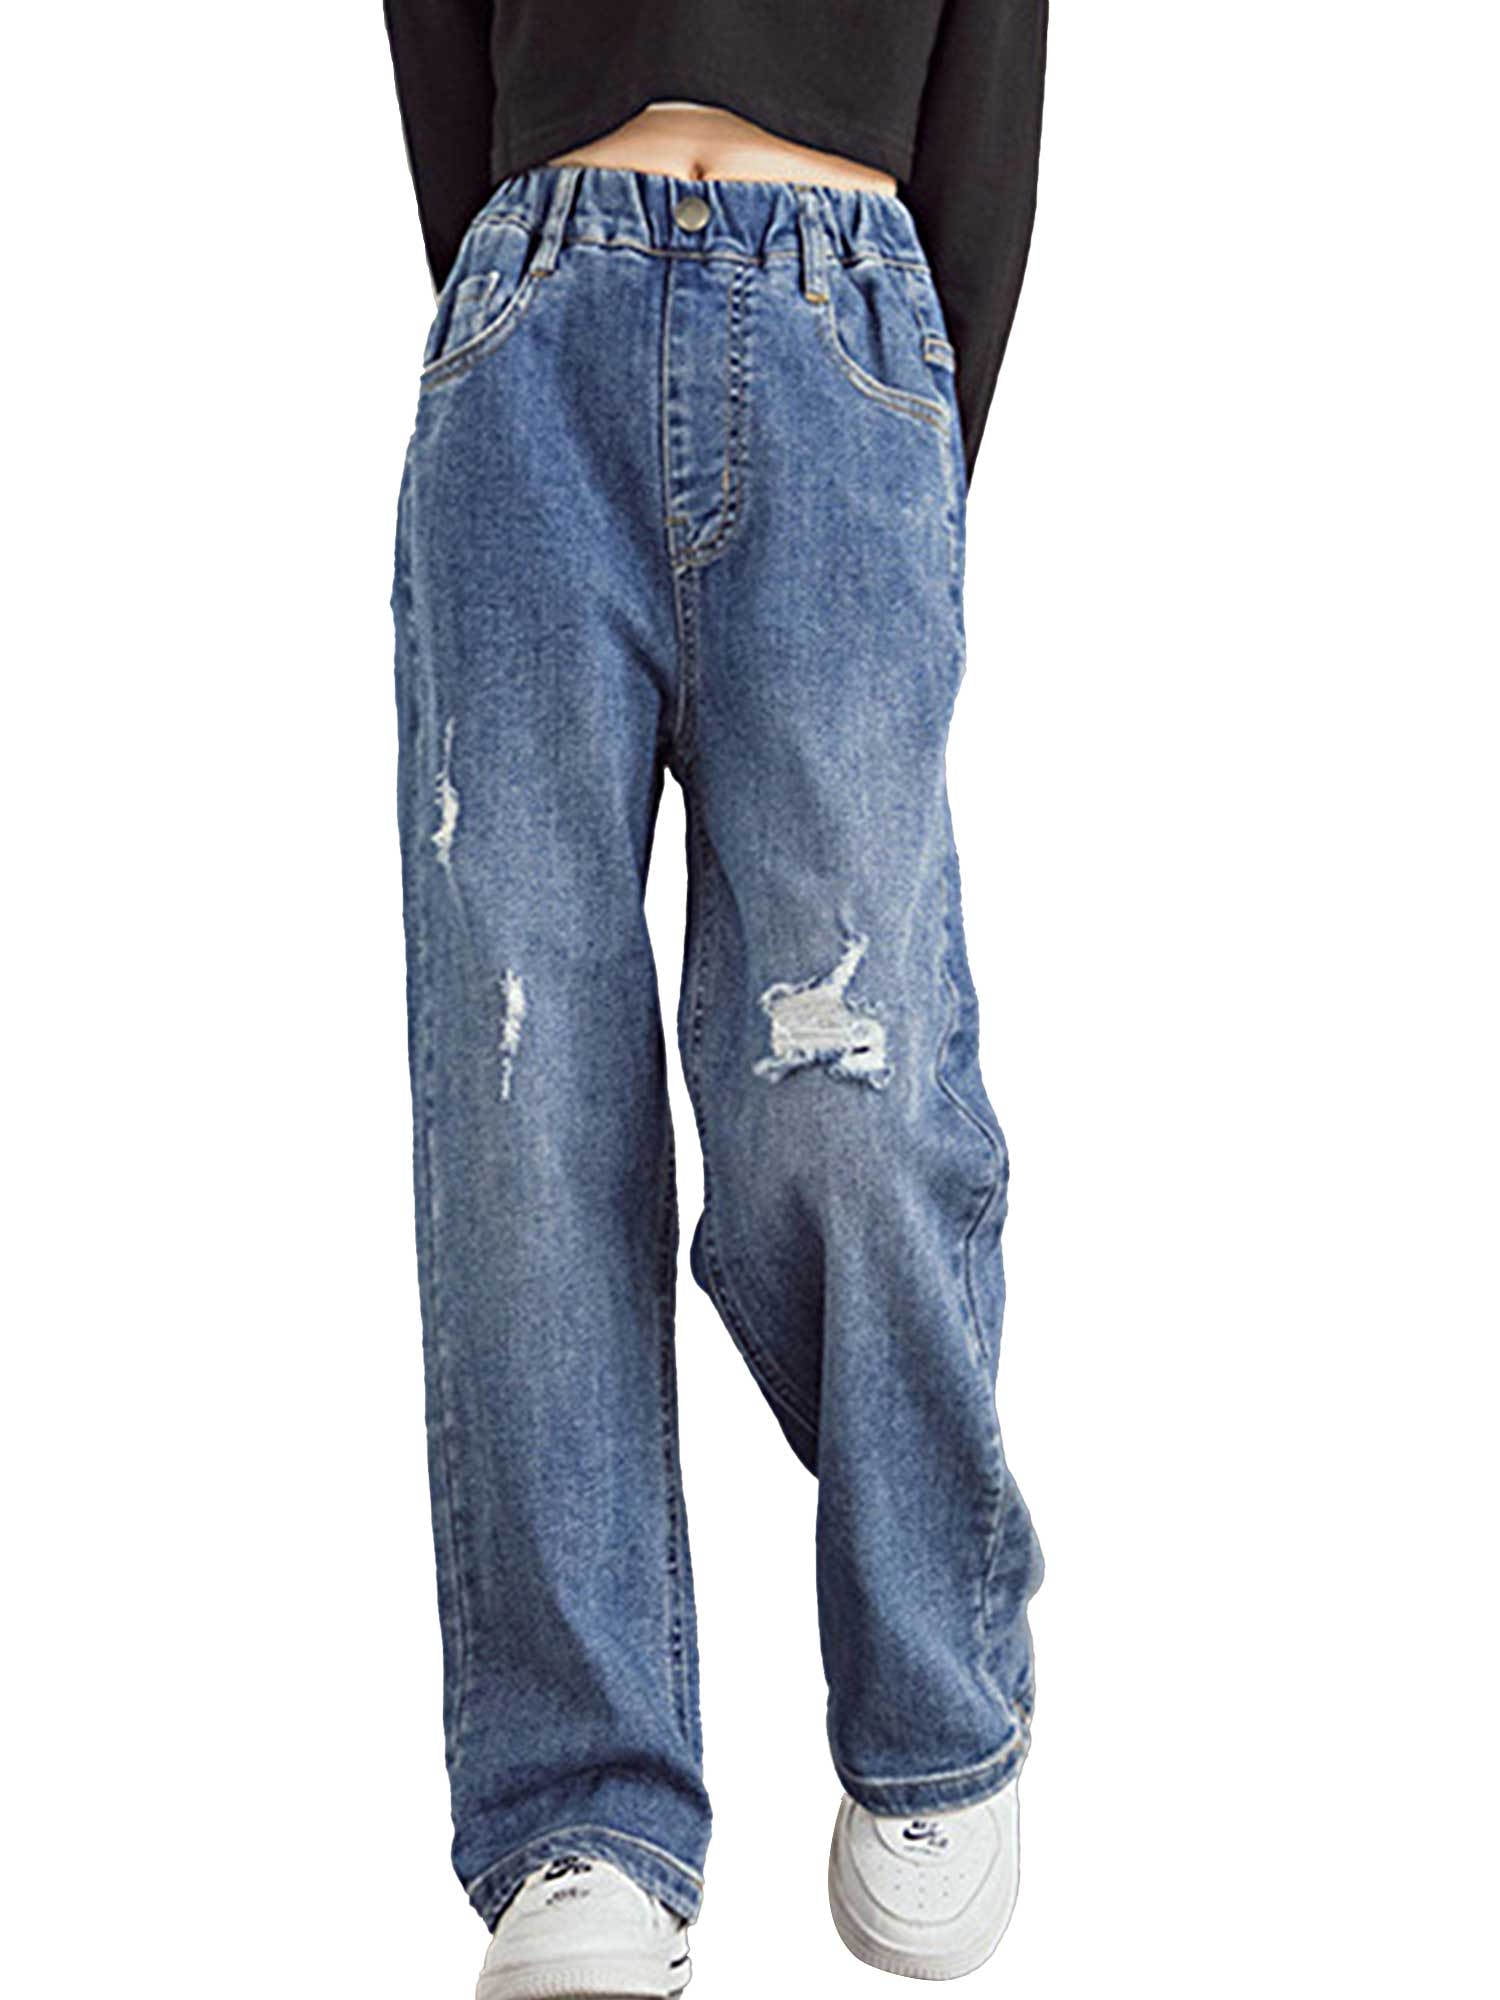 Ved en fejltagelse På hovedet af Stillehavsøer renvena Kids Girls Youth Casual Ripped Jeans Denim Pants Wide Leg Loose  Straight Fashion Baggy Trousers - Walmart.com